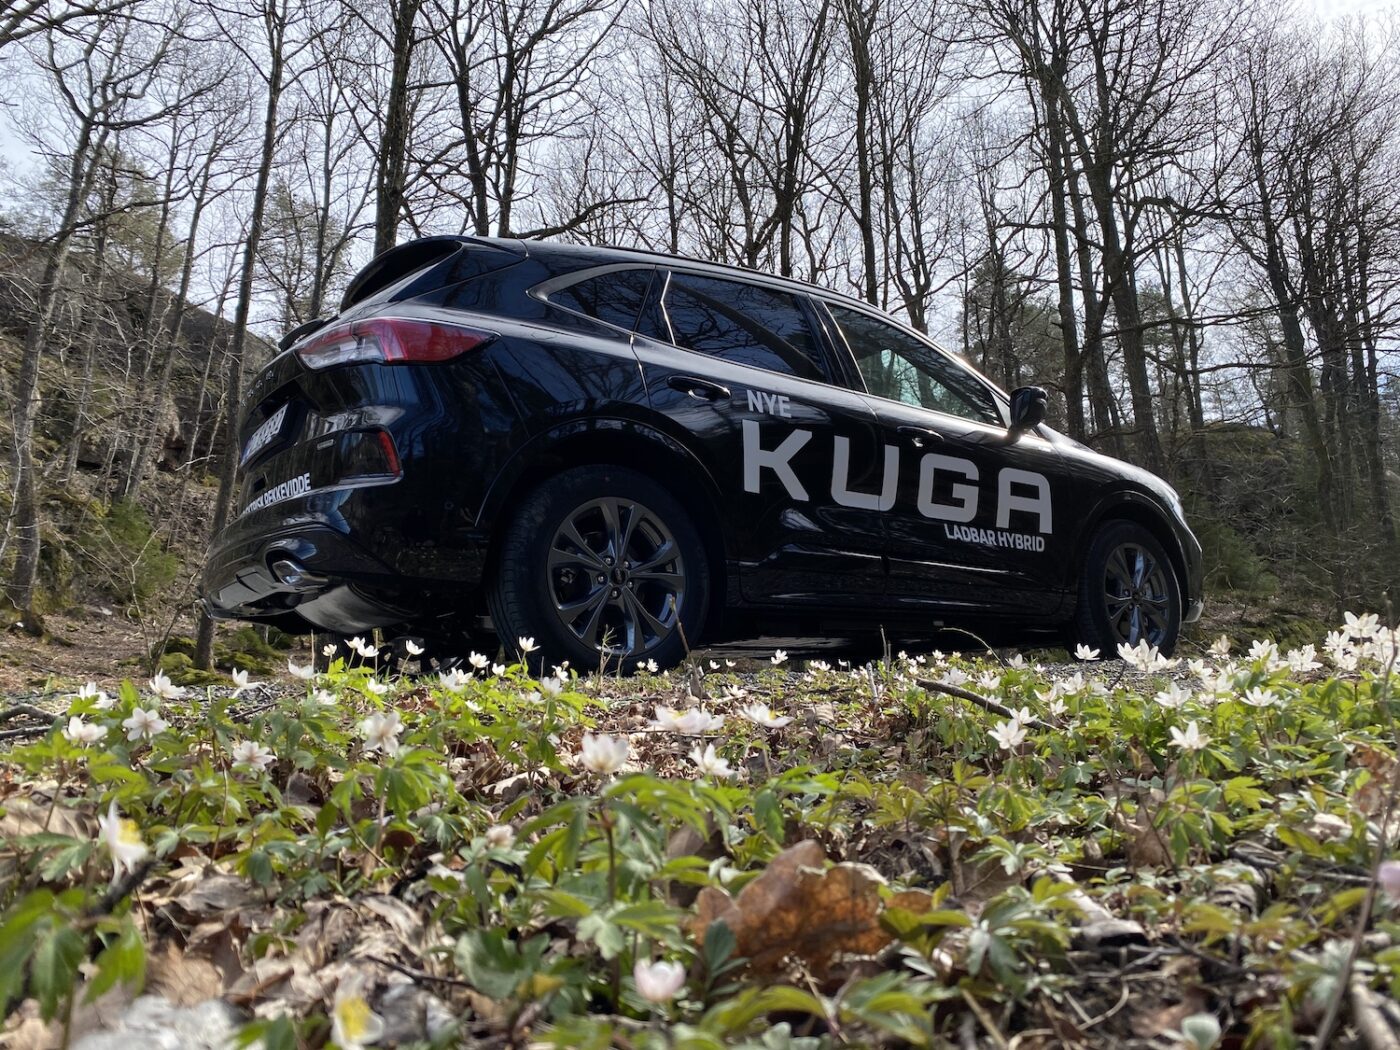 Norgespremiere for Ford Kuga – nå også som ladbar hybrid